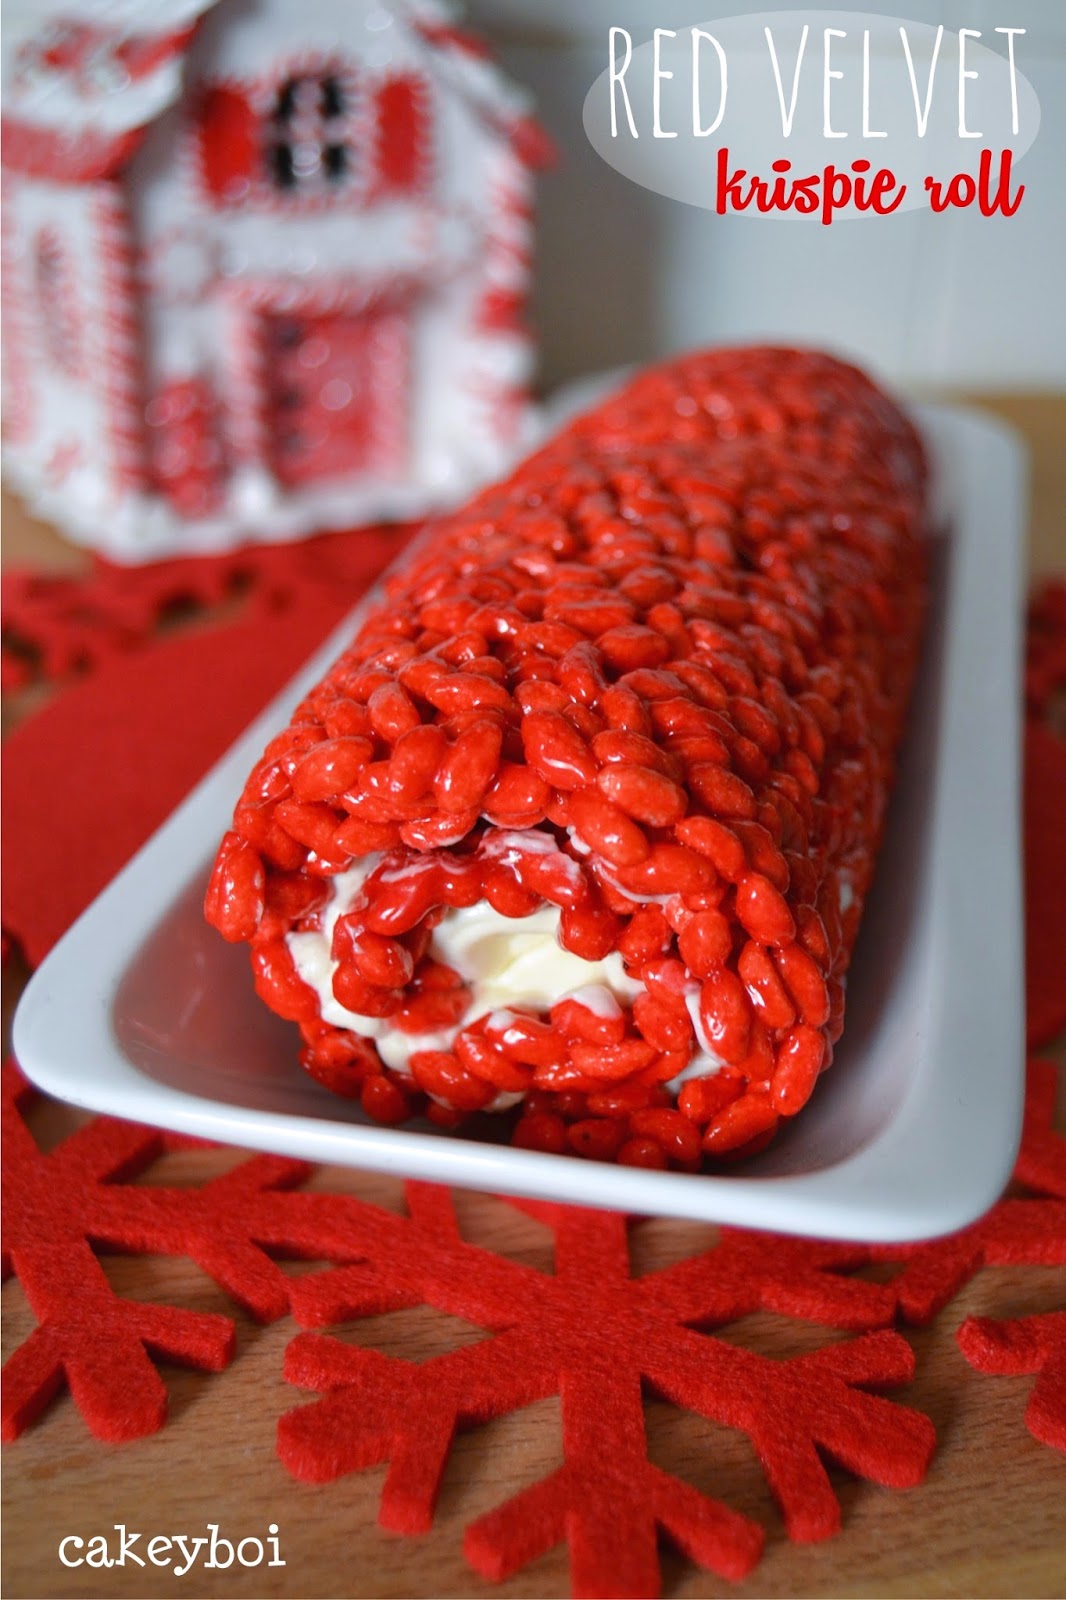 red velvet krispie treats in a festive log shape